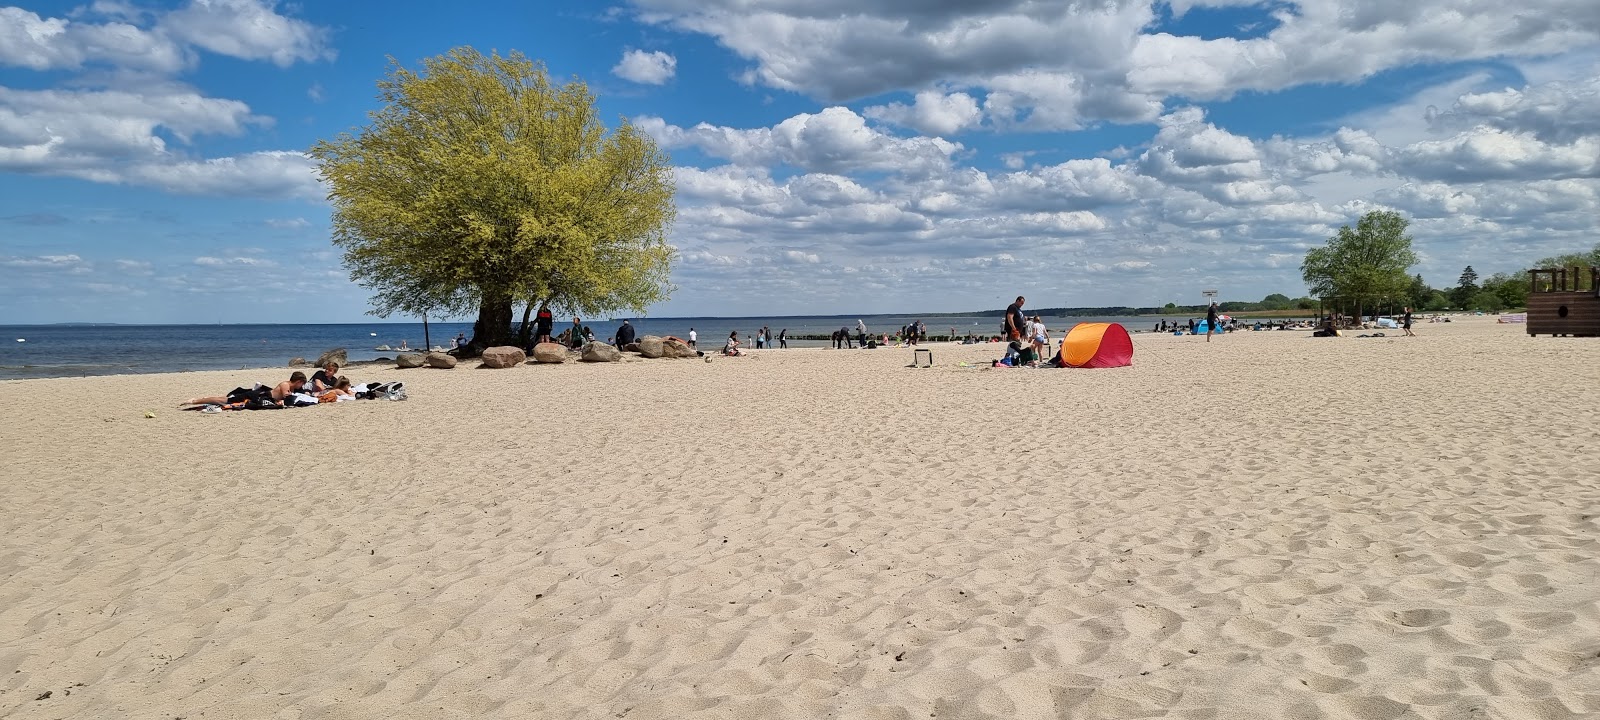 Ueckermünde Plajı'in fotoğrafı imkanlar alanı